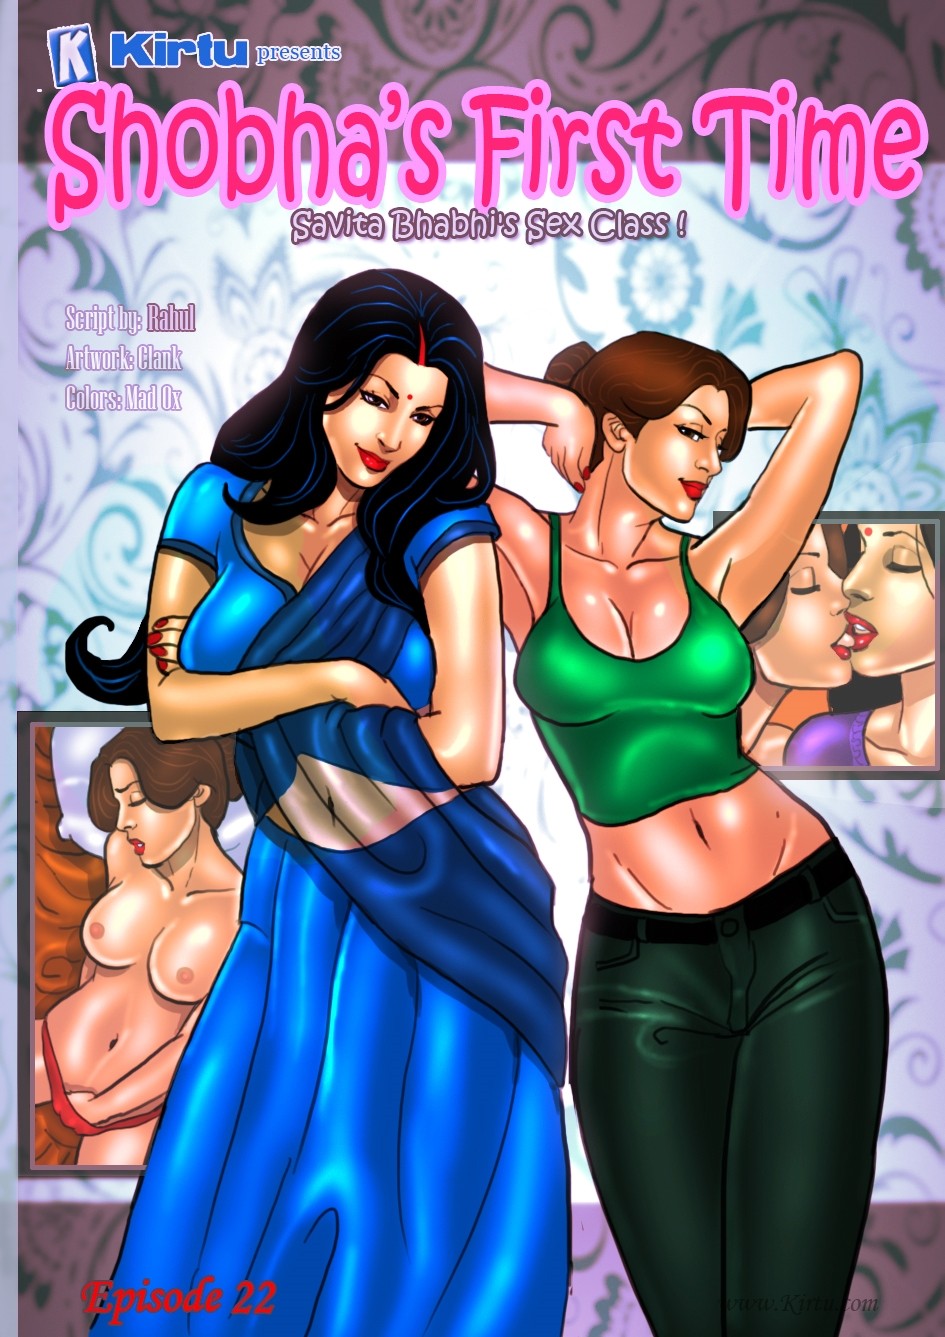 Savita Bhabhi 22- Shobha's First Time - Indian Porn comics and cartoons